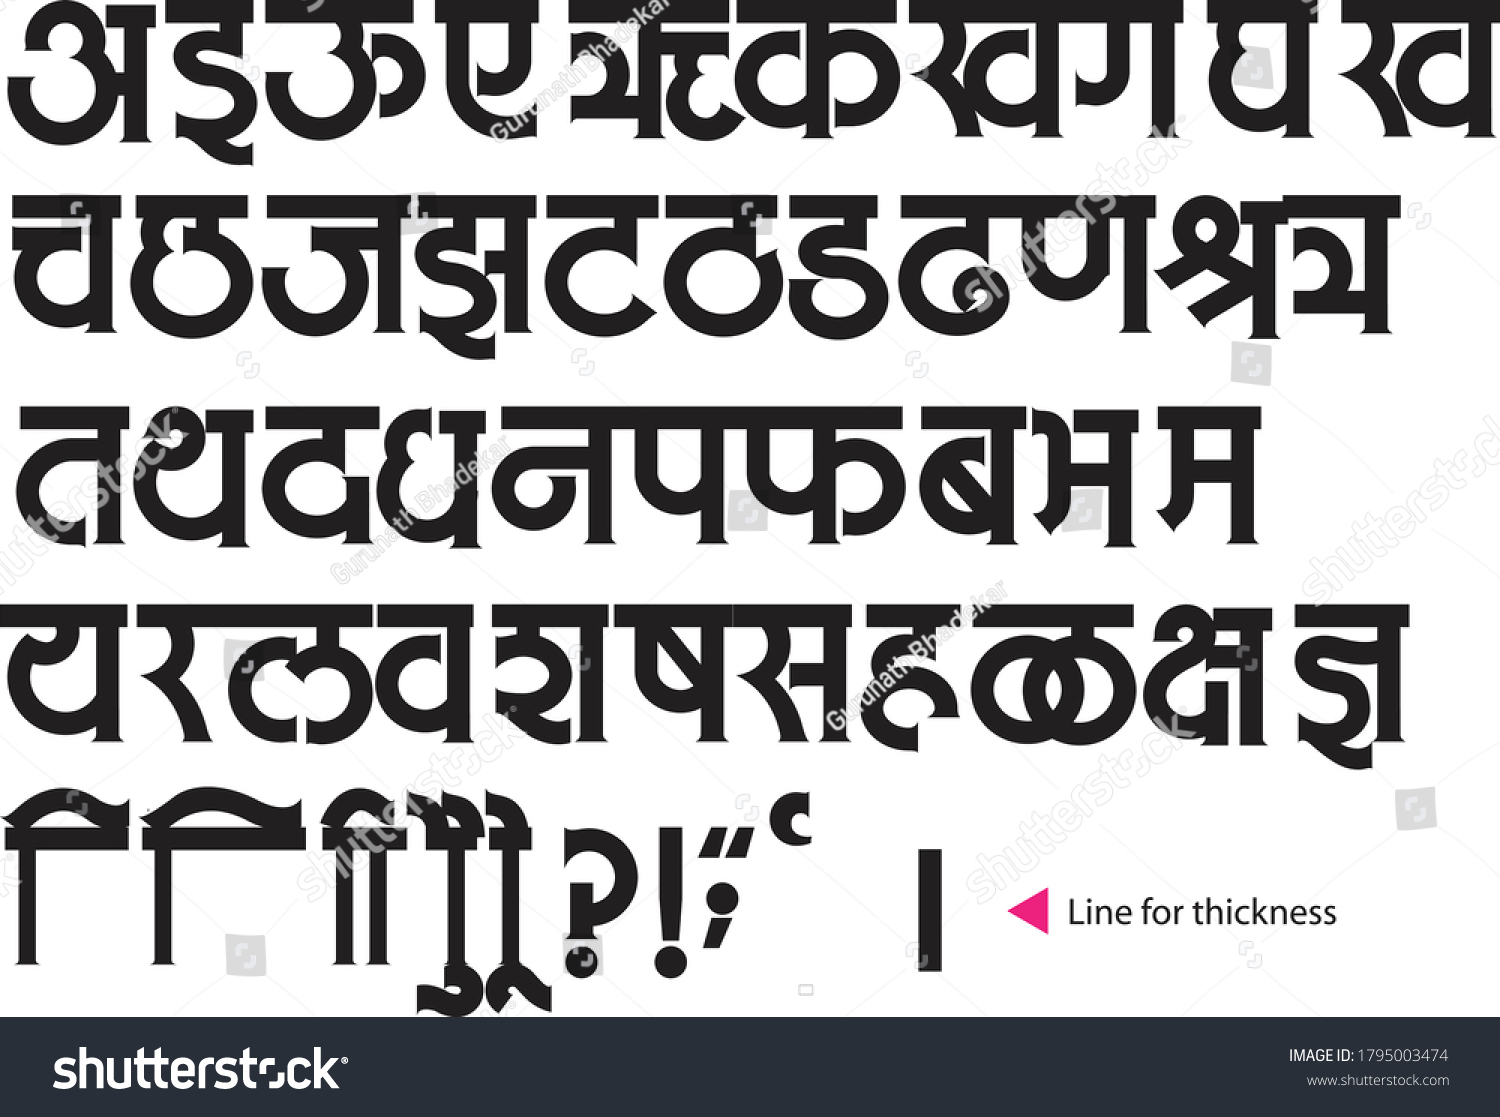 SVG of Handmade Devanagari font for Indian languages Hindi, Sanskrit and Marathi. svg